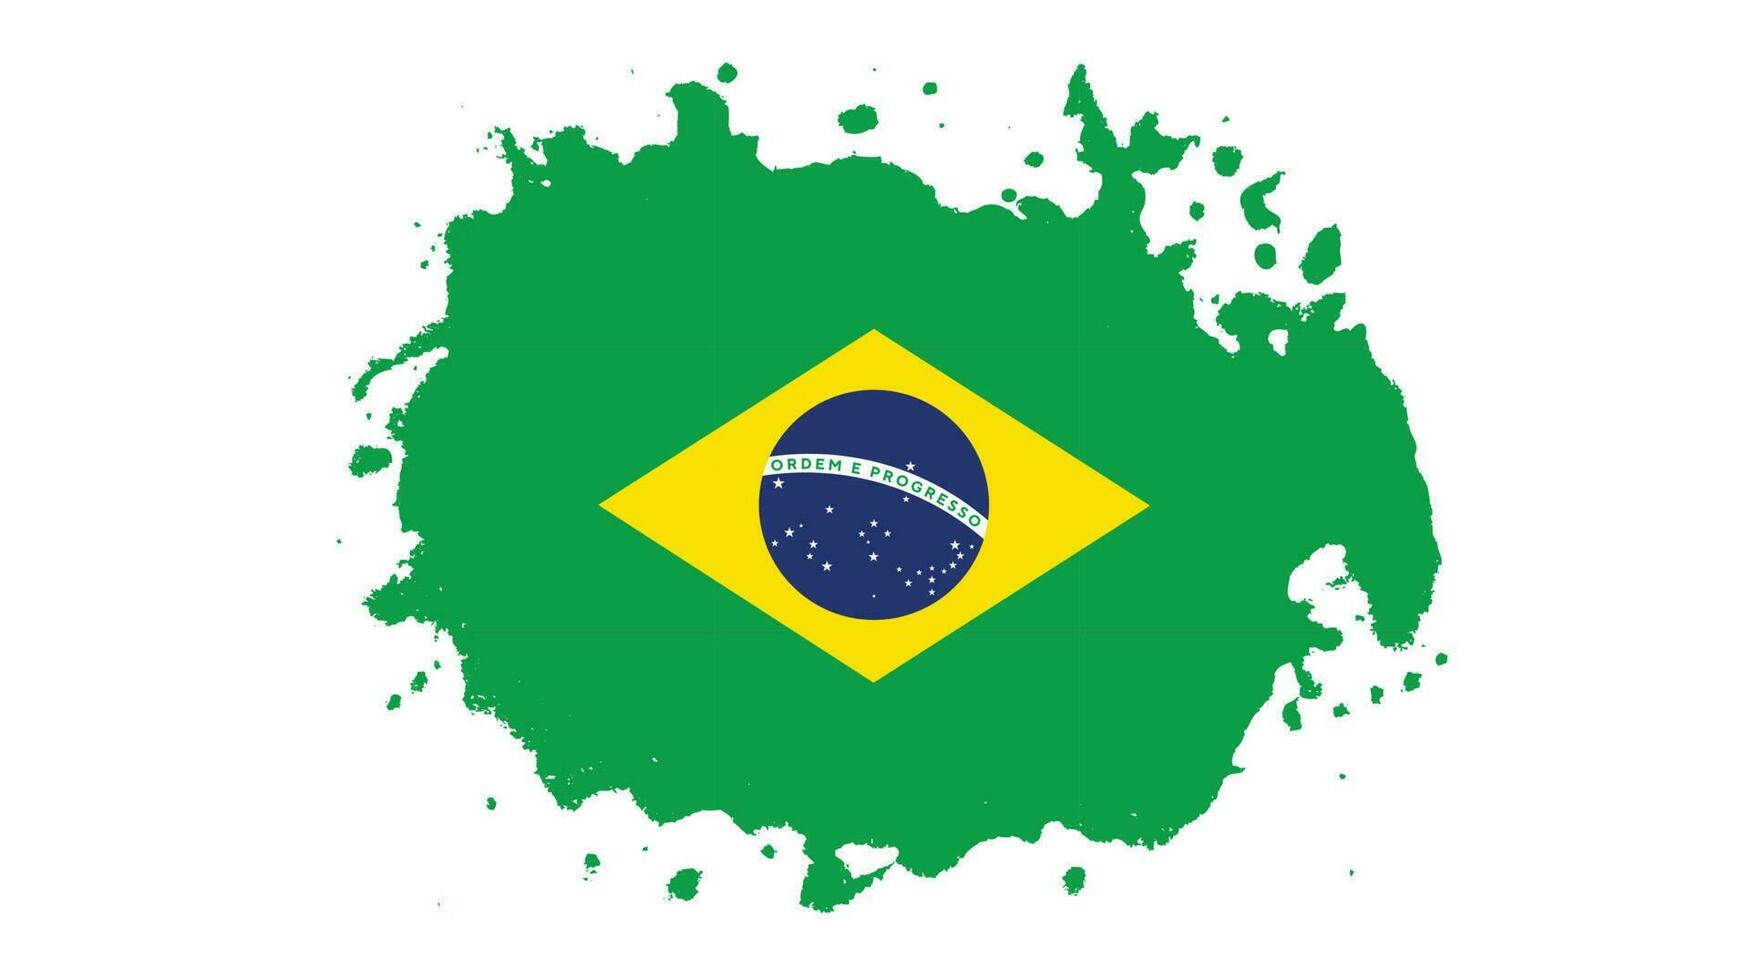 malen sie grunge pinselstrich brasilien flaggenvektor vektor